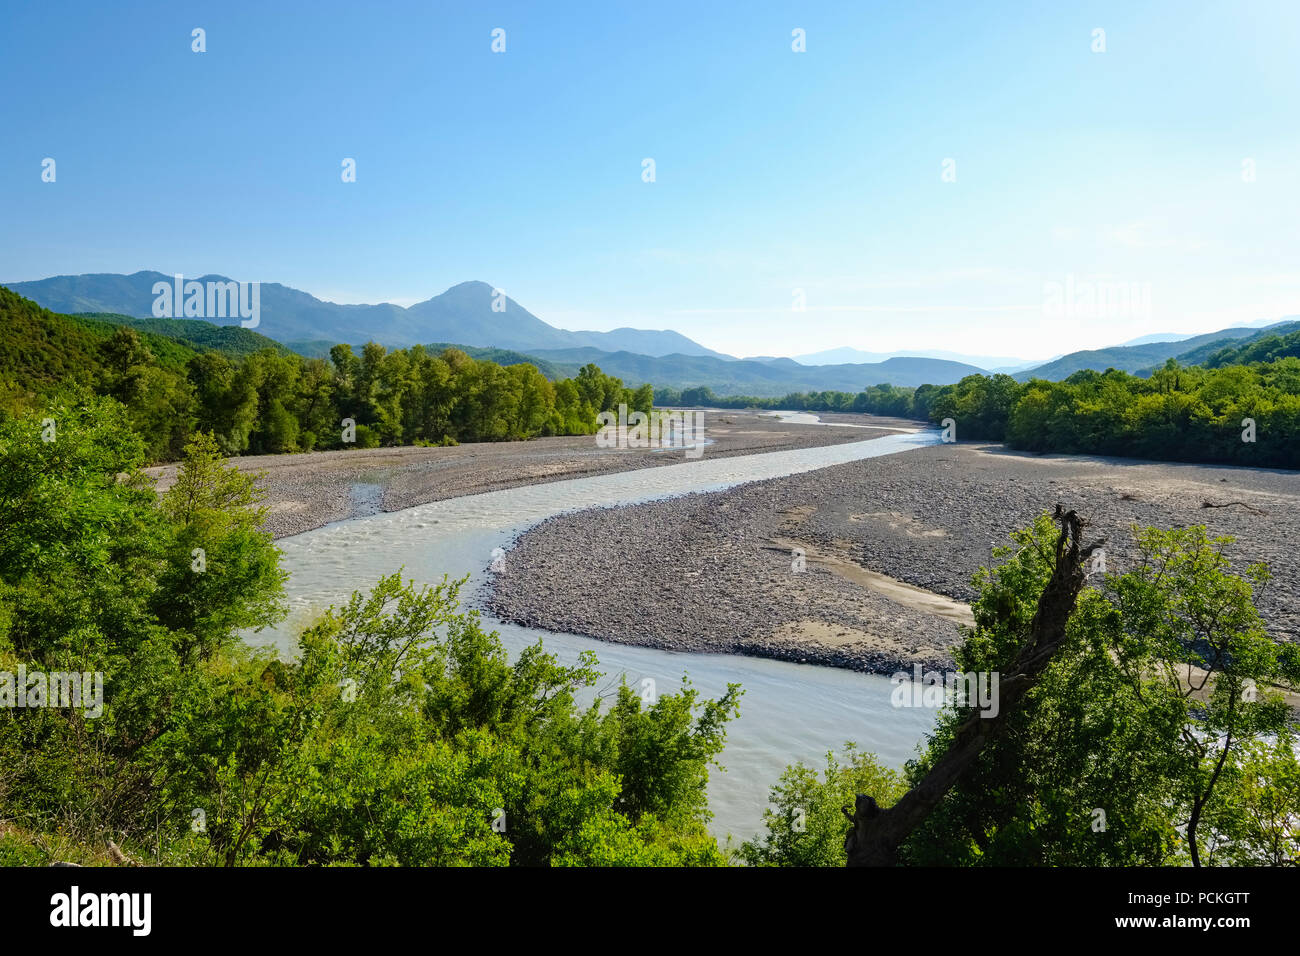 River Sarandaporos, région frontalière, Qar Gjirokastra, l'Albanie, l'Épire, Grèce Banque D'Images